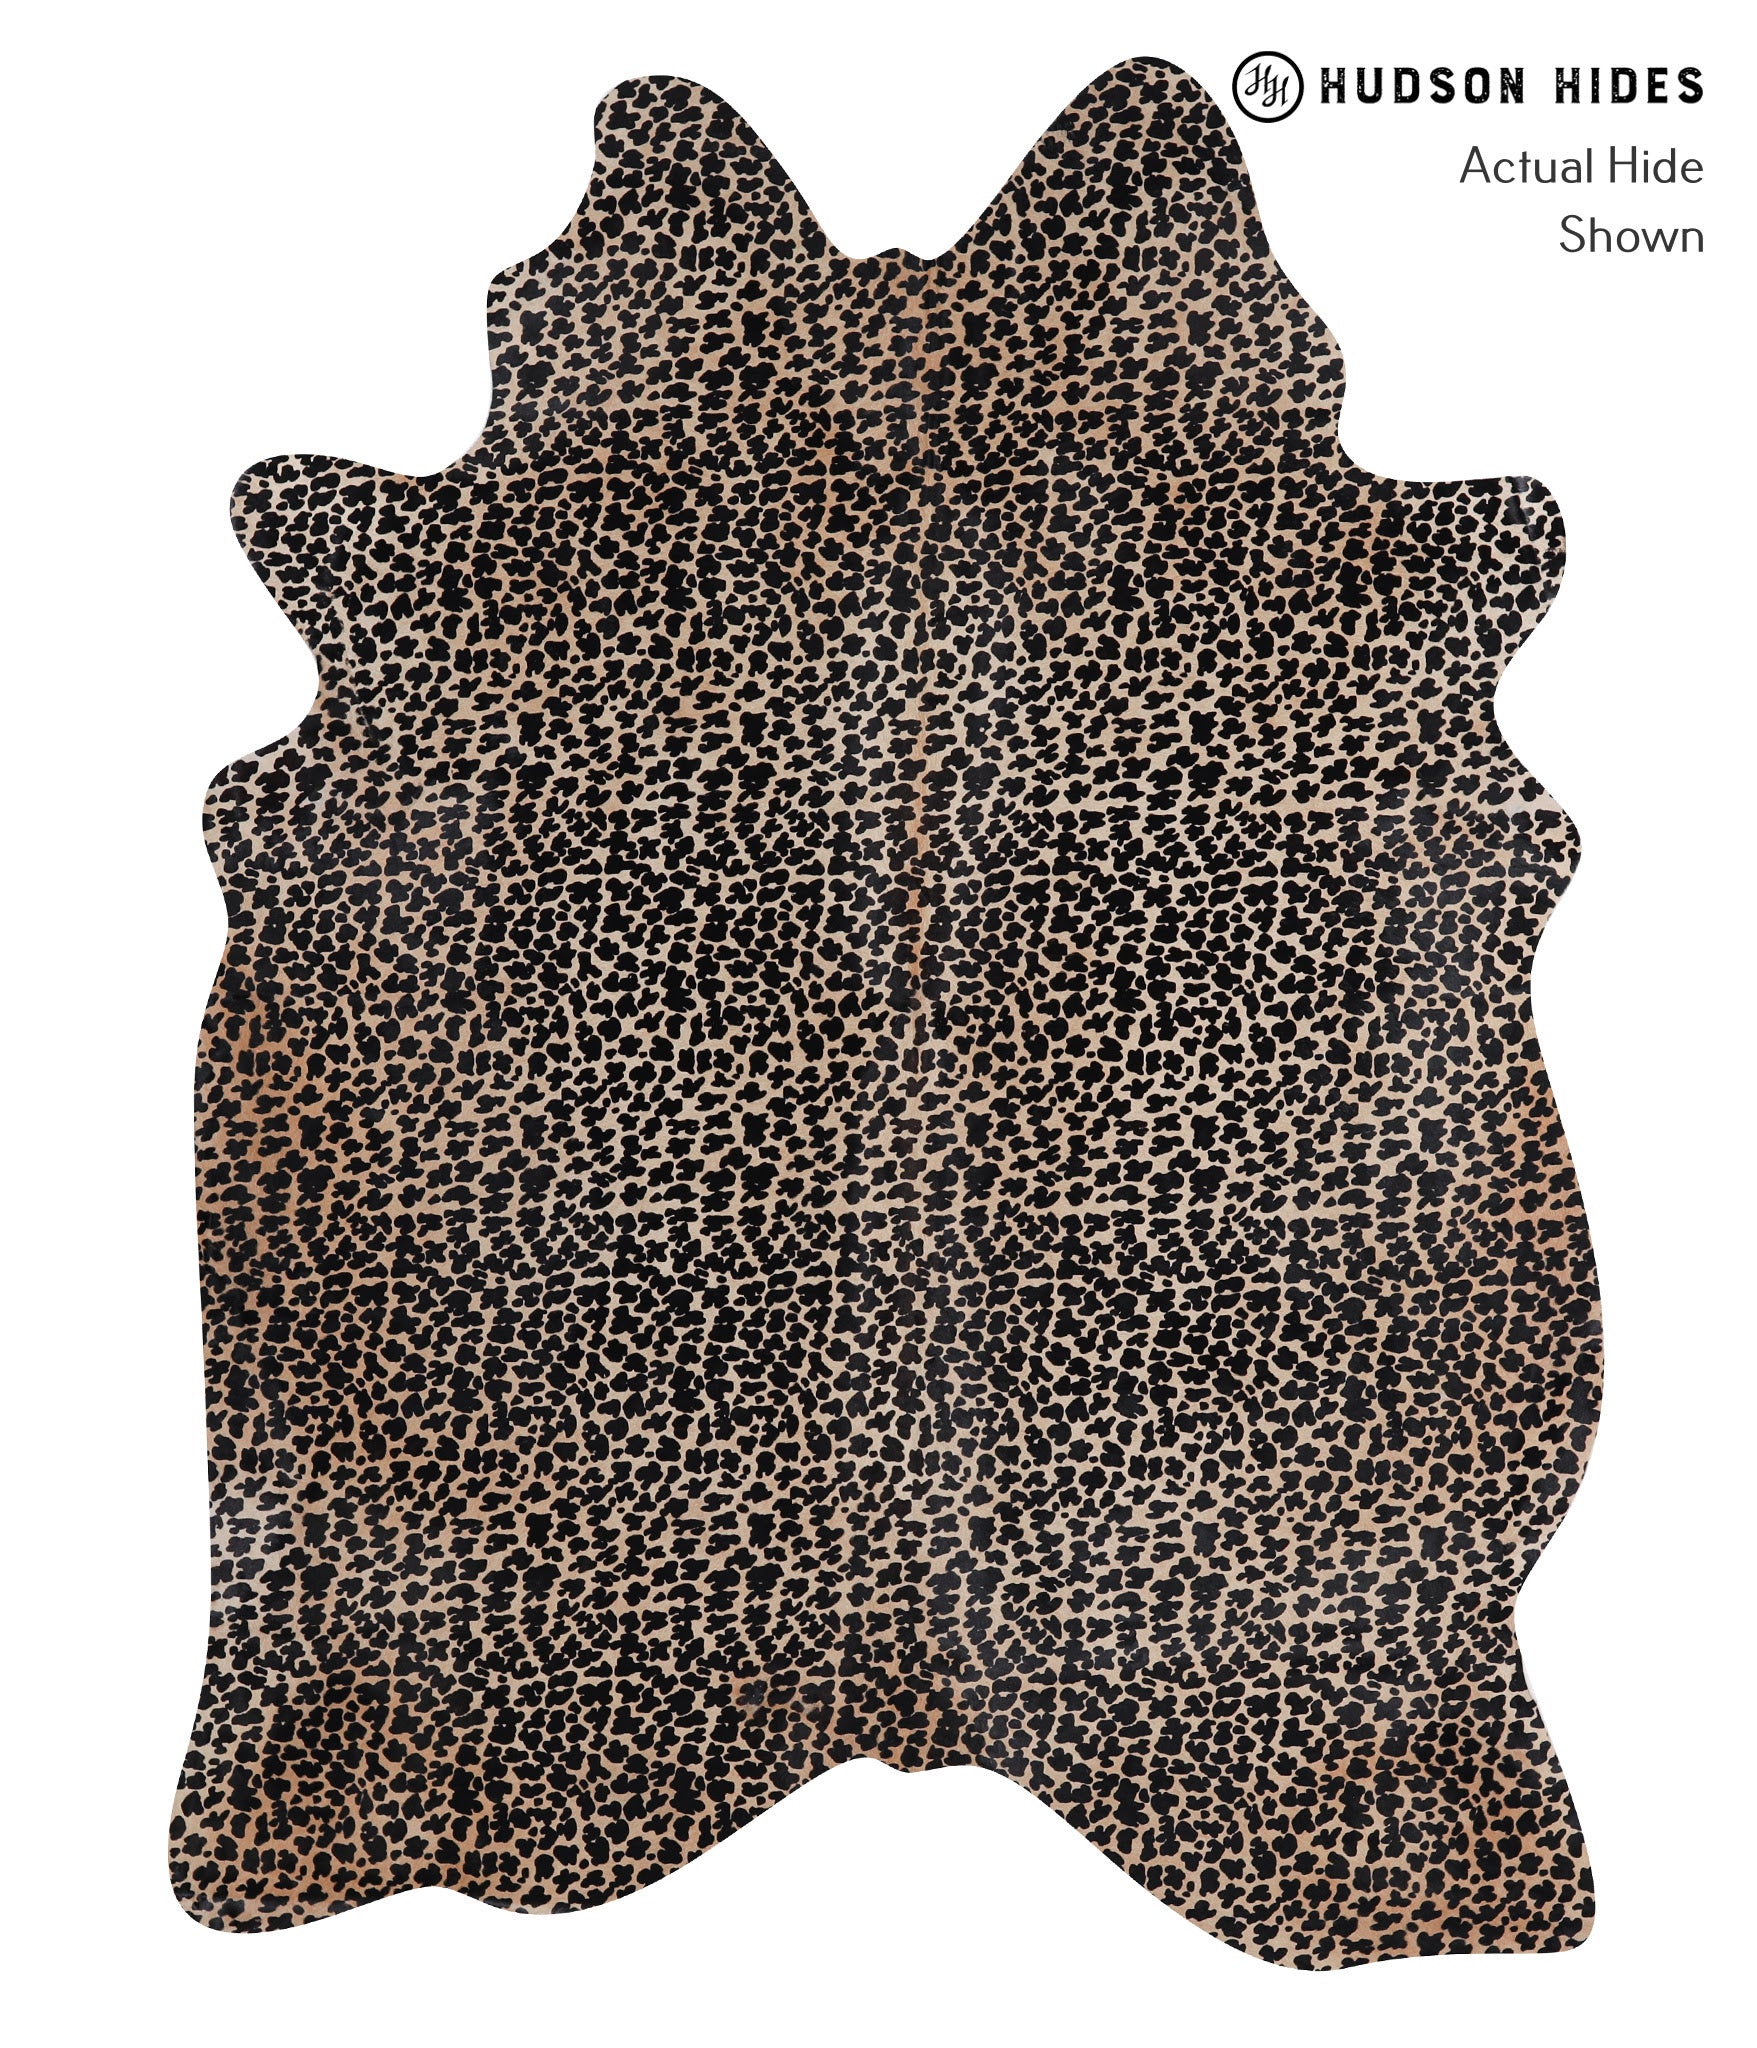 Animal Print Cowhide Rug #A12830